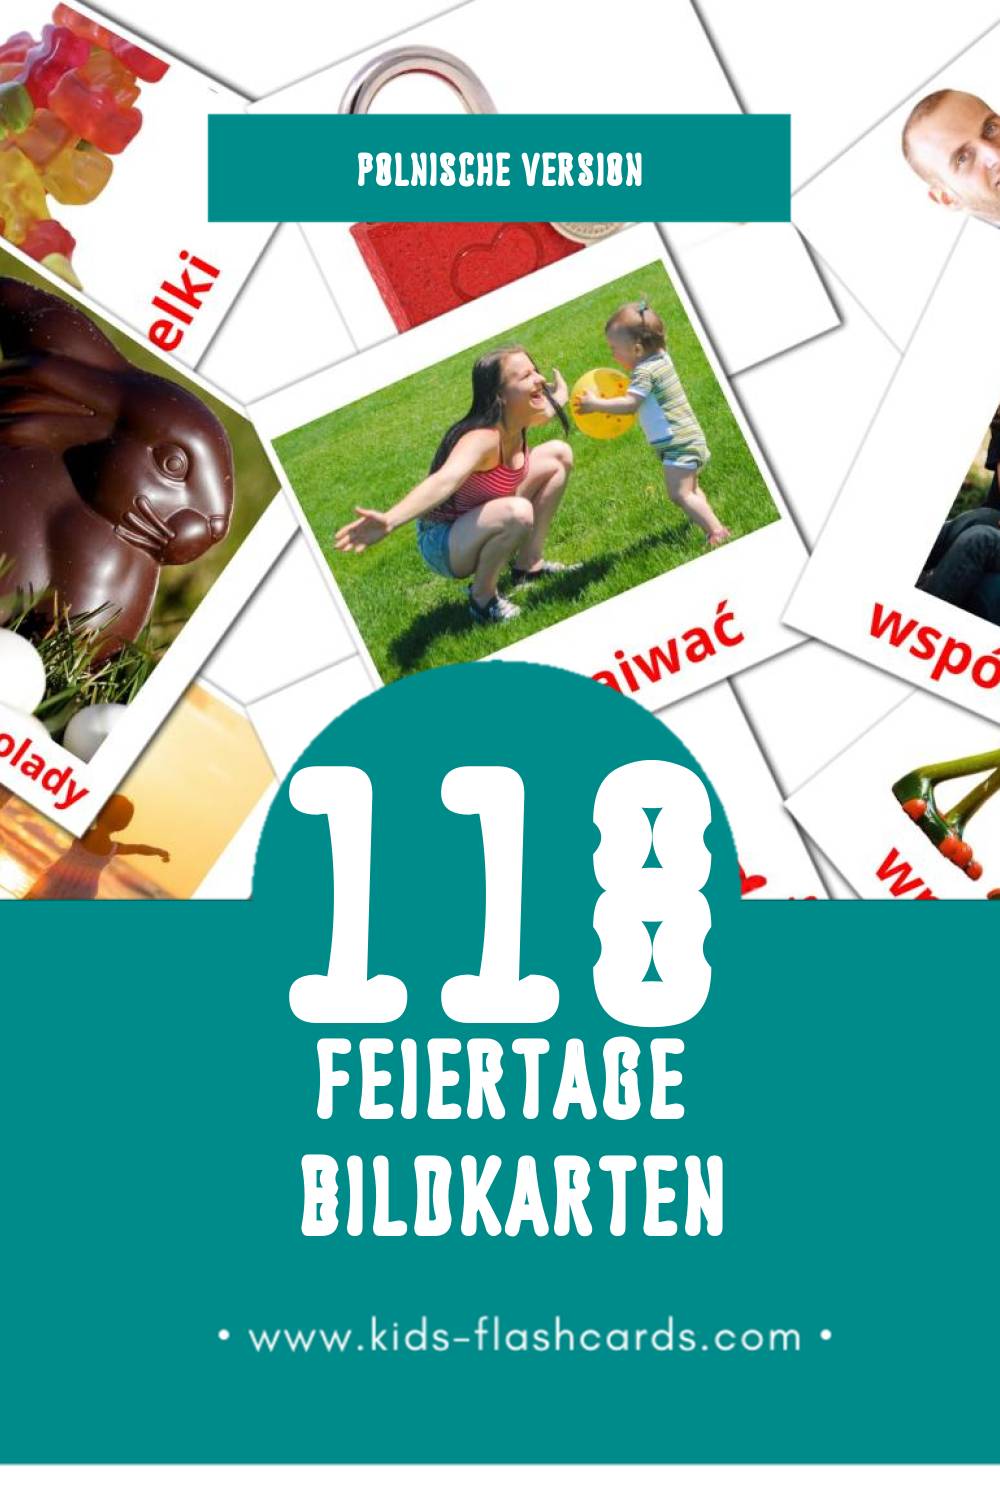 Visual Święta Flashcards für Kleinkinder (118 Karten in Polnisch)